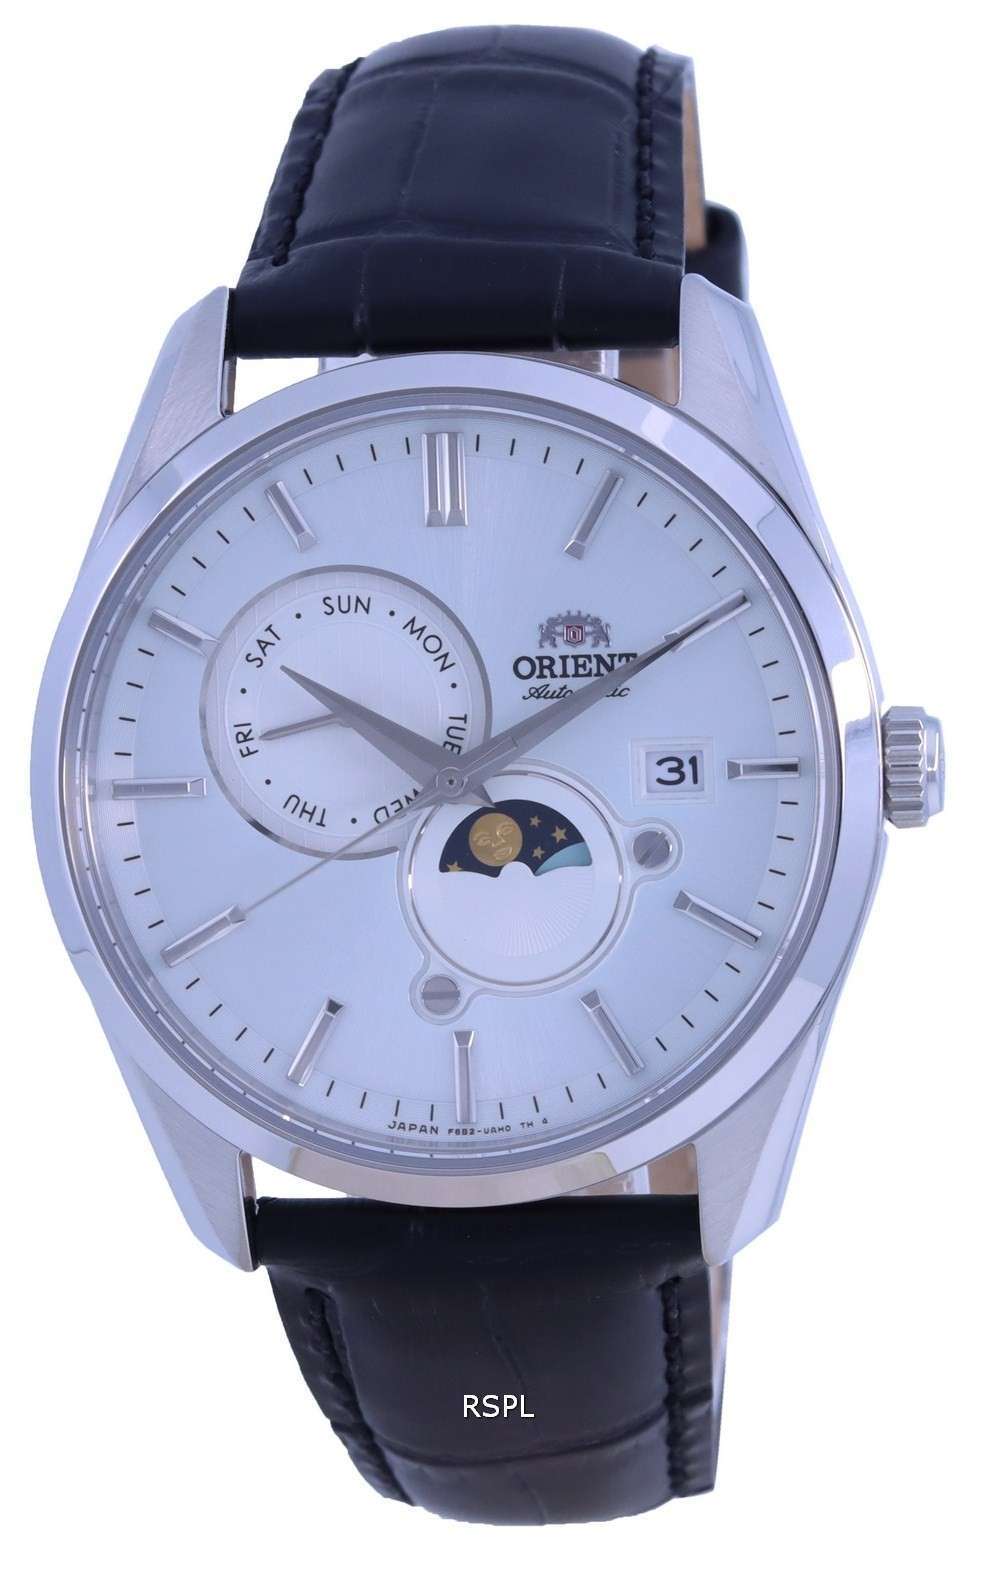 Reloj para hombre Orient Sun &amp, Moon Gen 5 con esfera blanca y automÃ¡tico RA-AK0310S00C